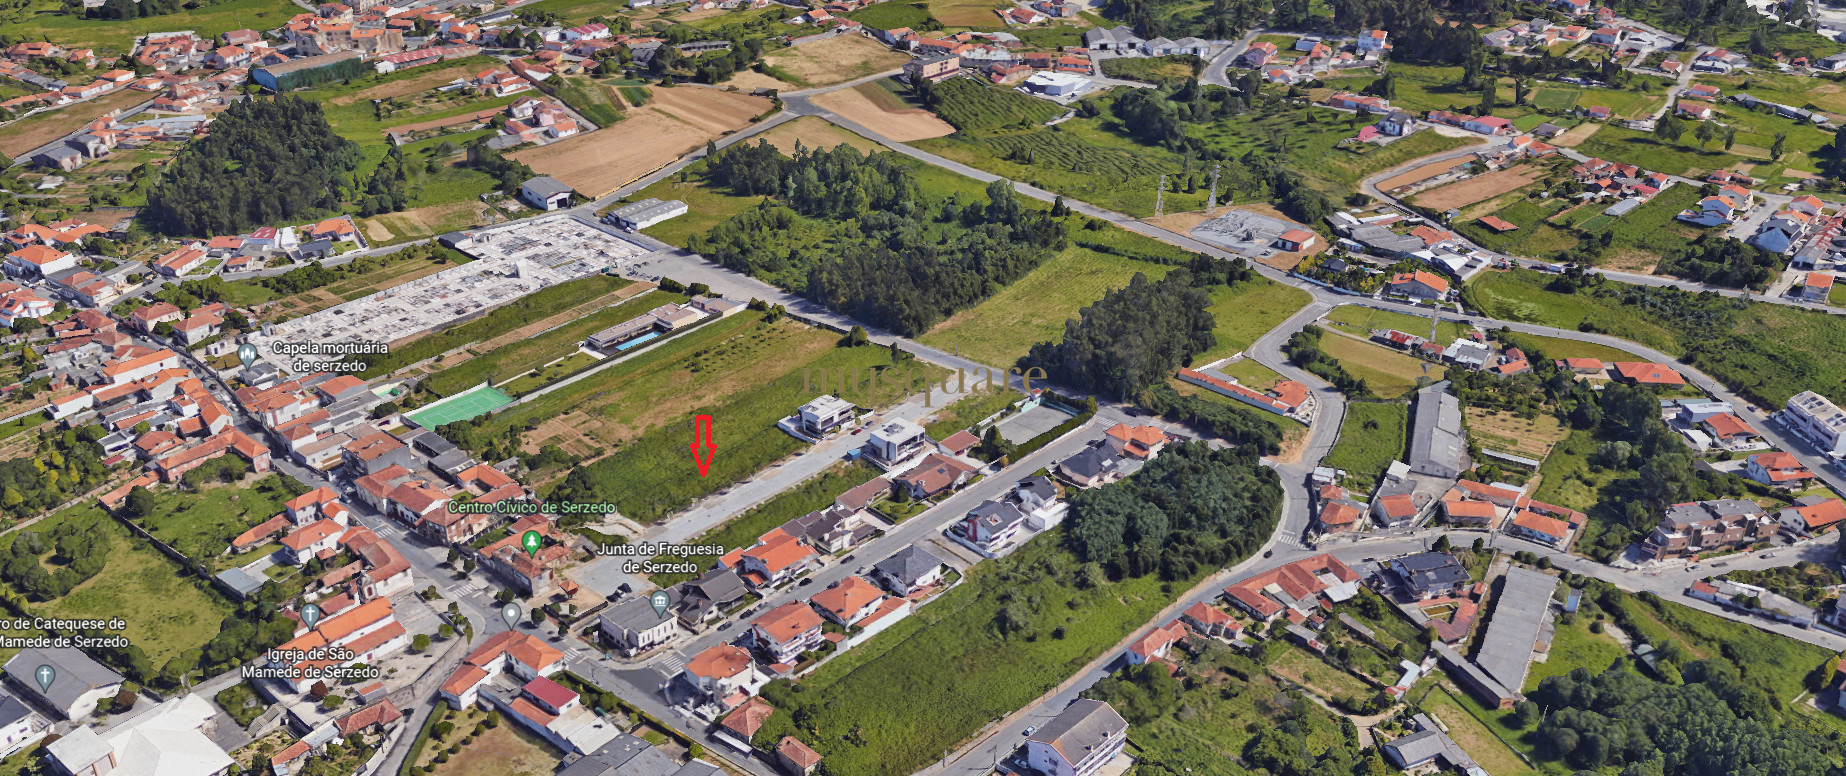 Lots pour la construction de logements, typologie t3, Serzedo, Vila Nova de Gaia